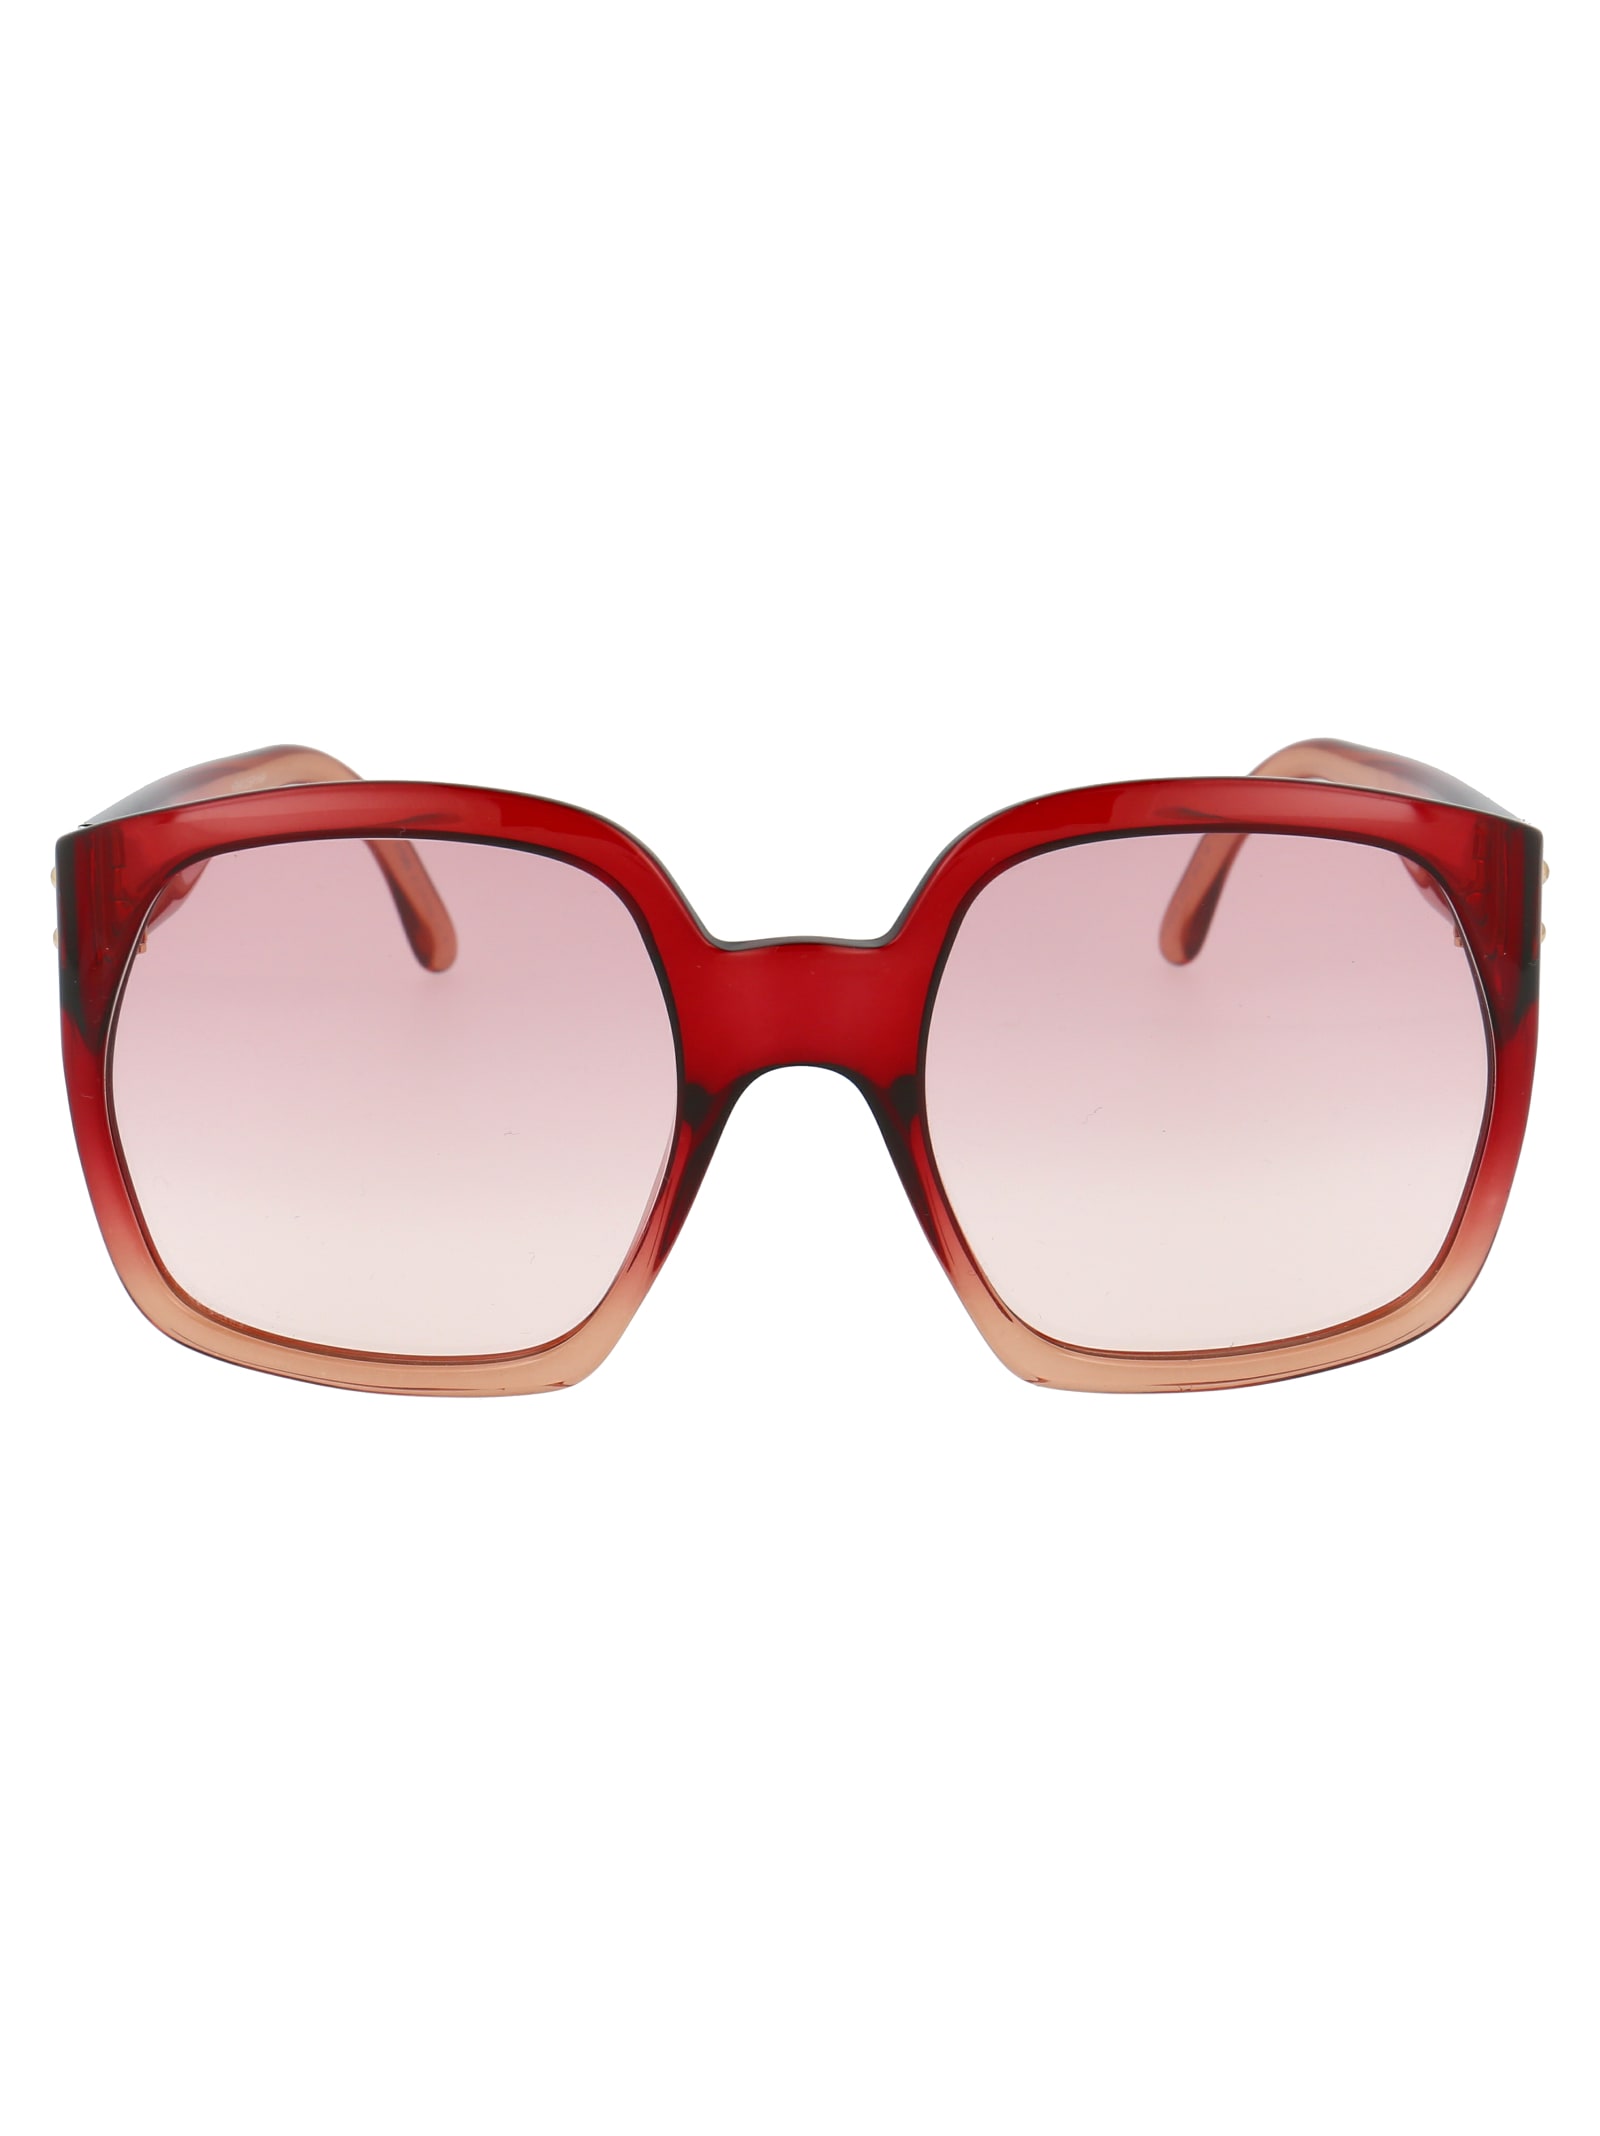 Fendi Sunglasses In R Cherry